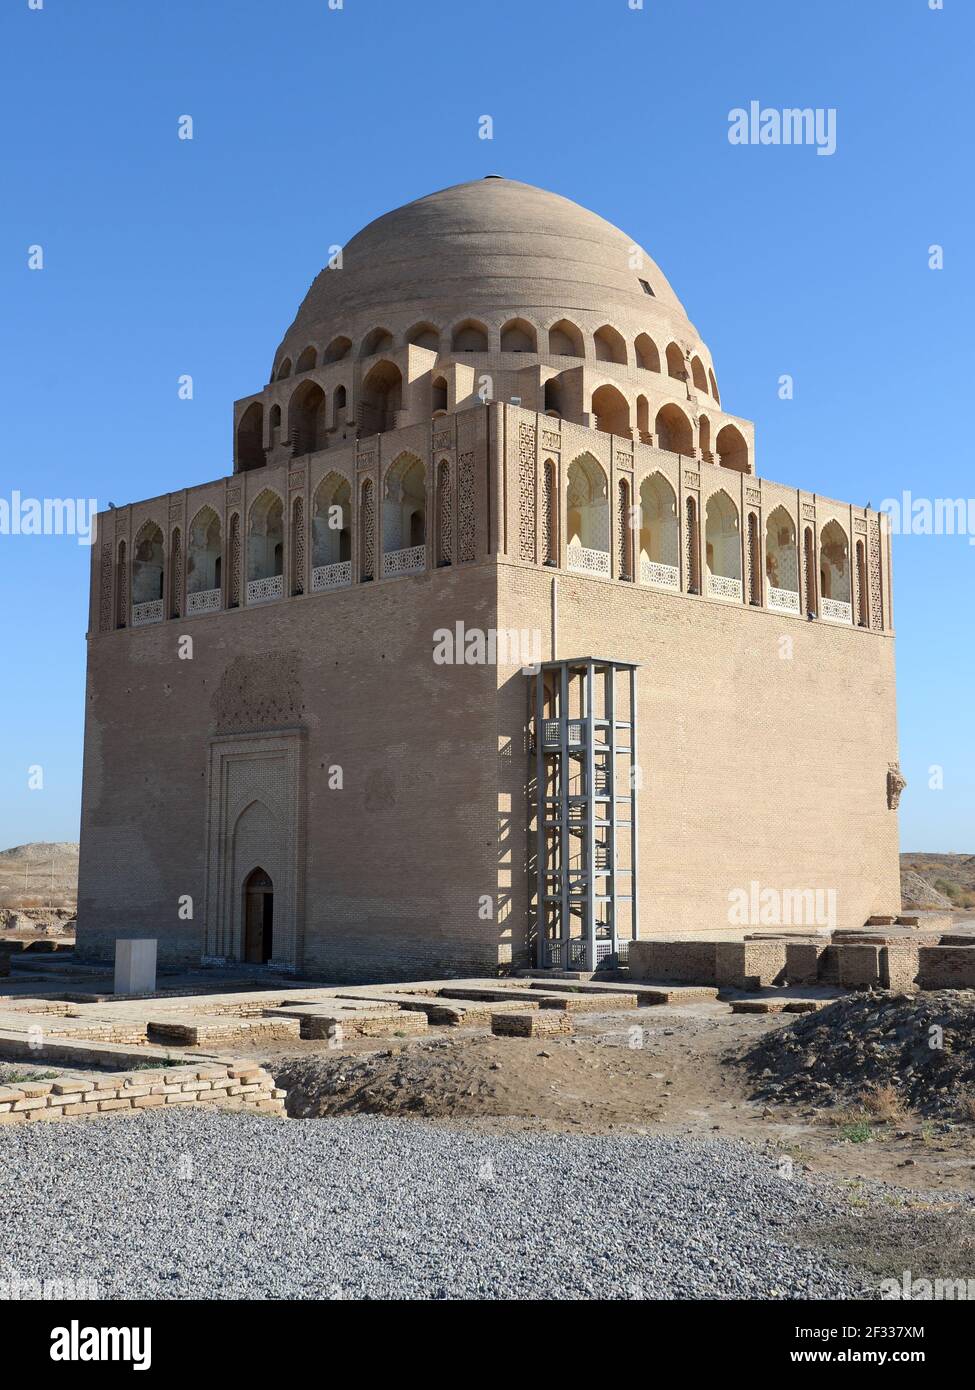 Mausoleo y Tumba del Sultán Sarjar construido para Ahmad Sanjar, sultán del Gran Imperio Seljuk en el Viejo Merv, cerca de María, Turkmenistán. Foto de stock